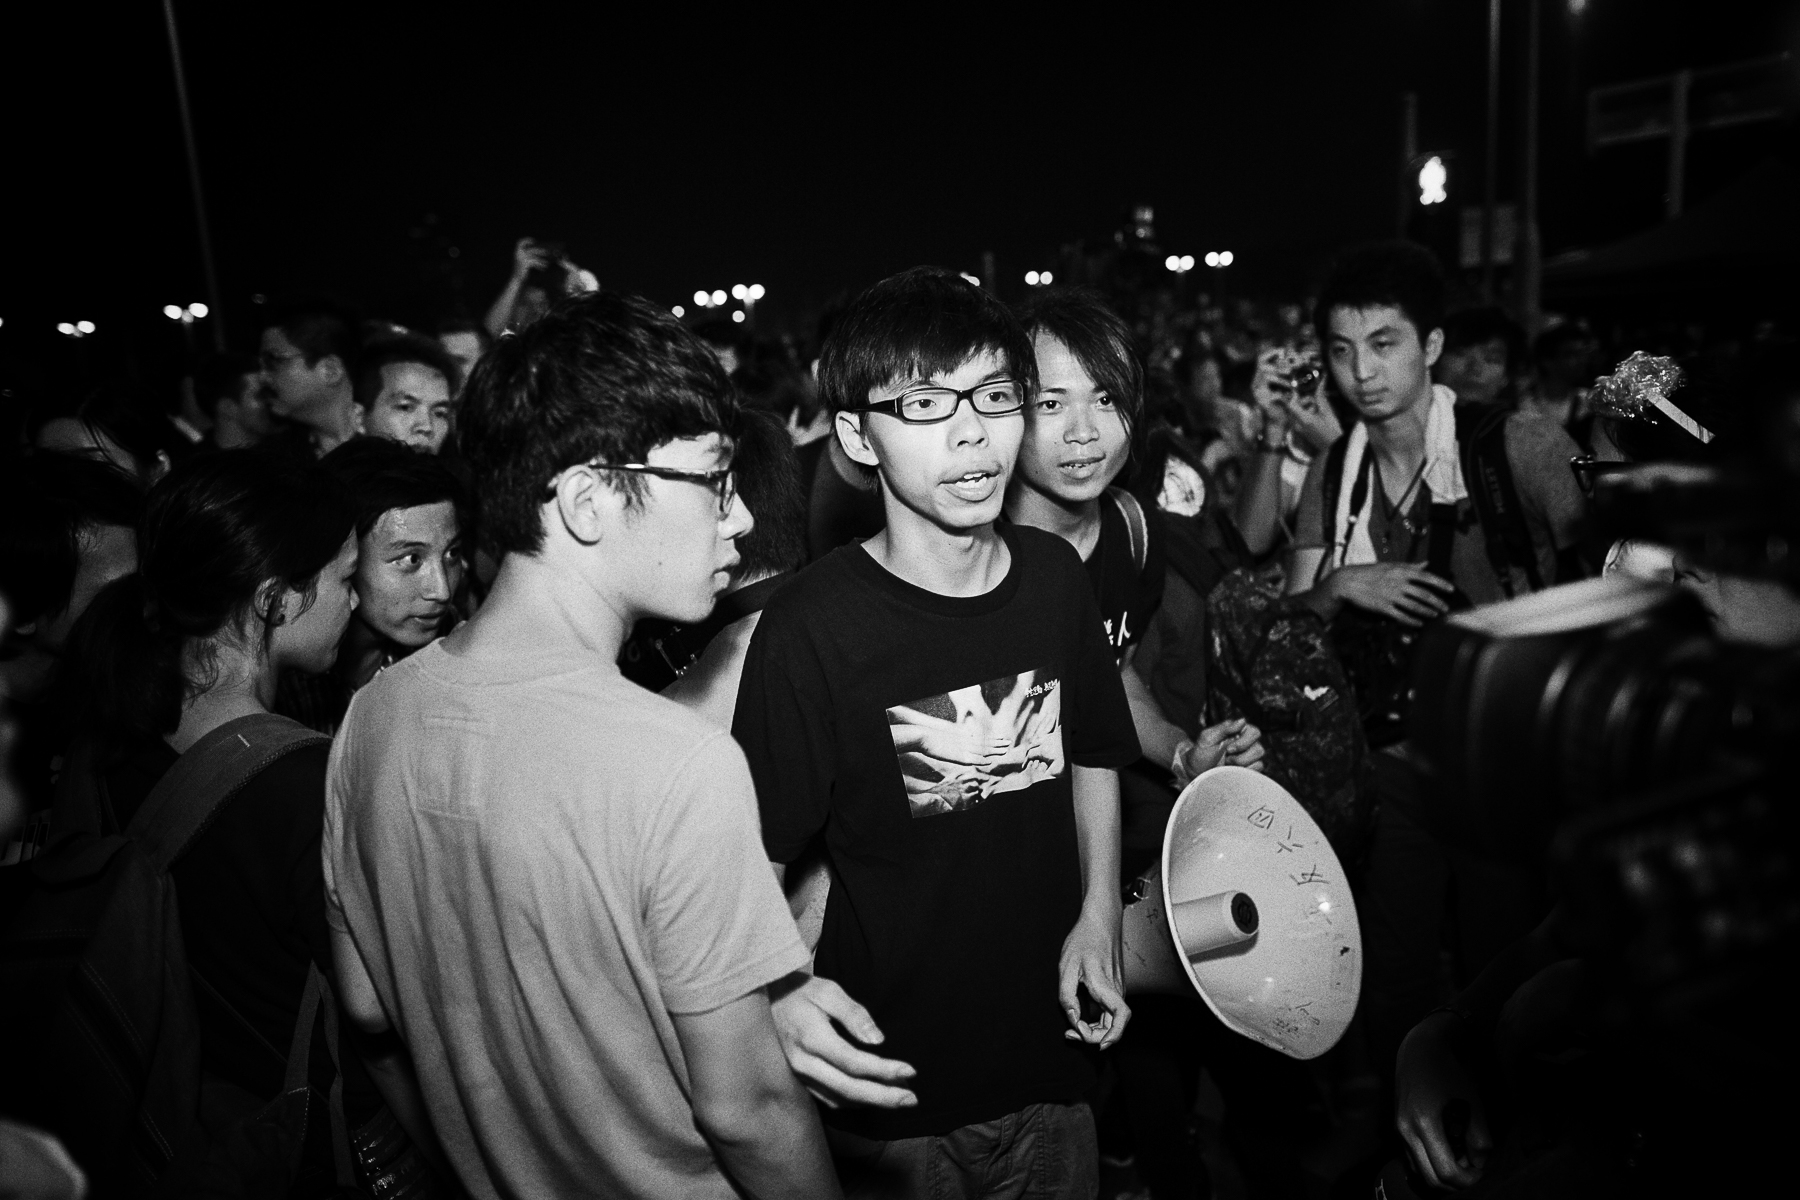 Manifestations pro-démocratique, le leader un étudiant de 17 ans Joshua Wong.Joshua Wong avec Lester Shum leader de la fédération des étudiants de Hong kong.Prise de parole de Joshua wong